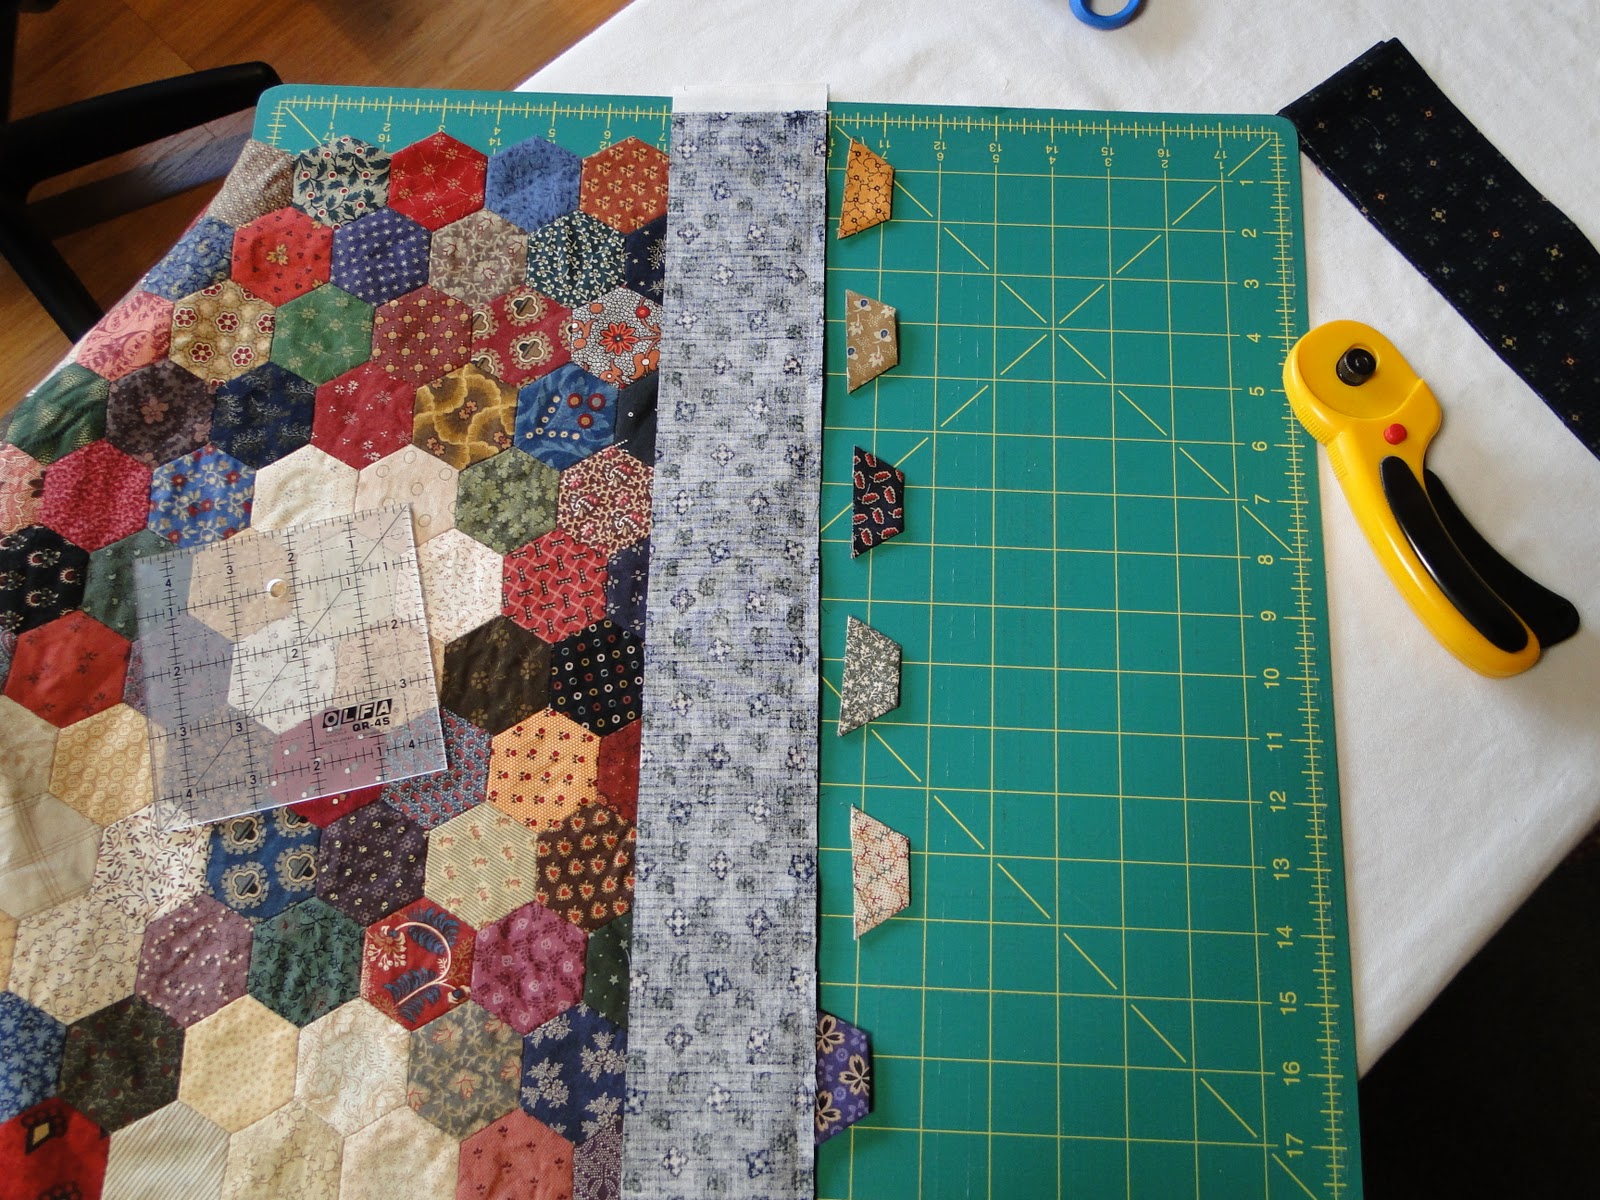 Half+hexagon+quilt+tutorial